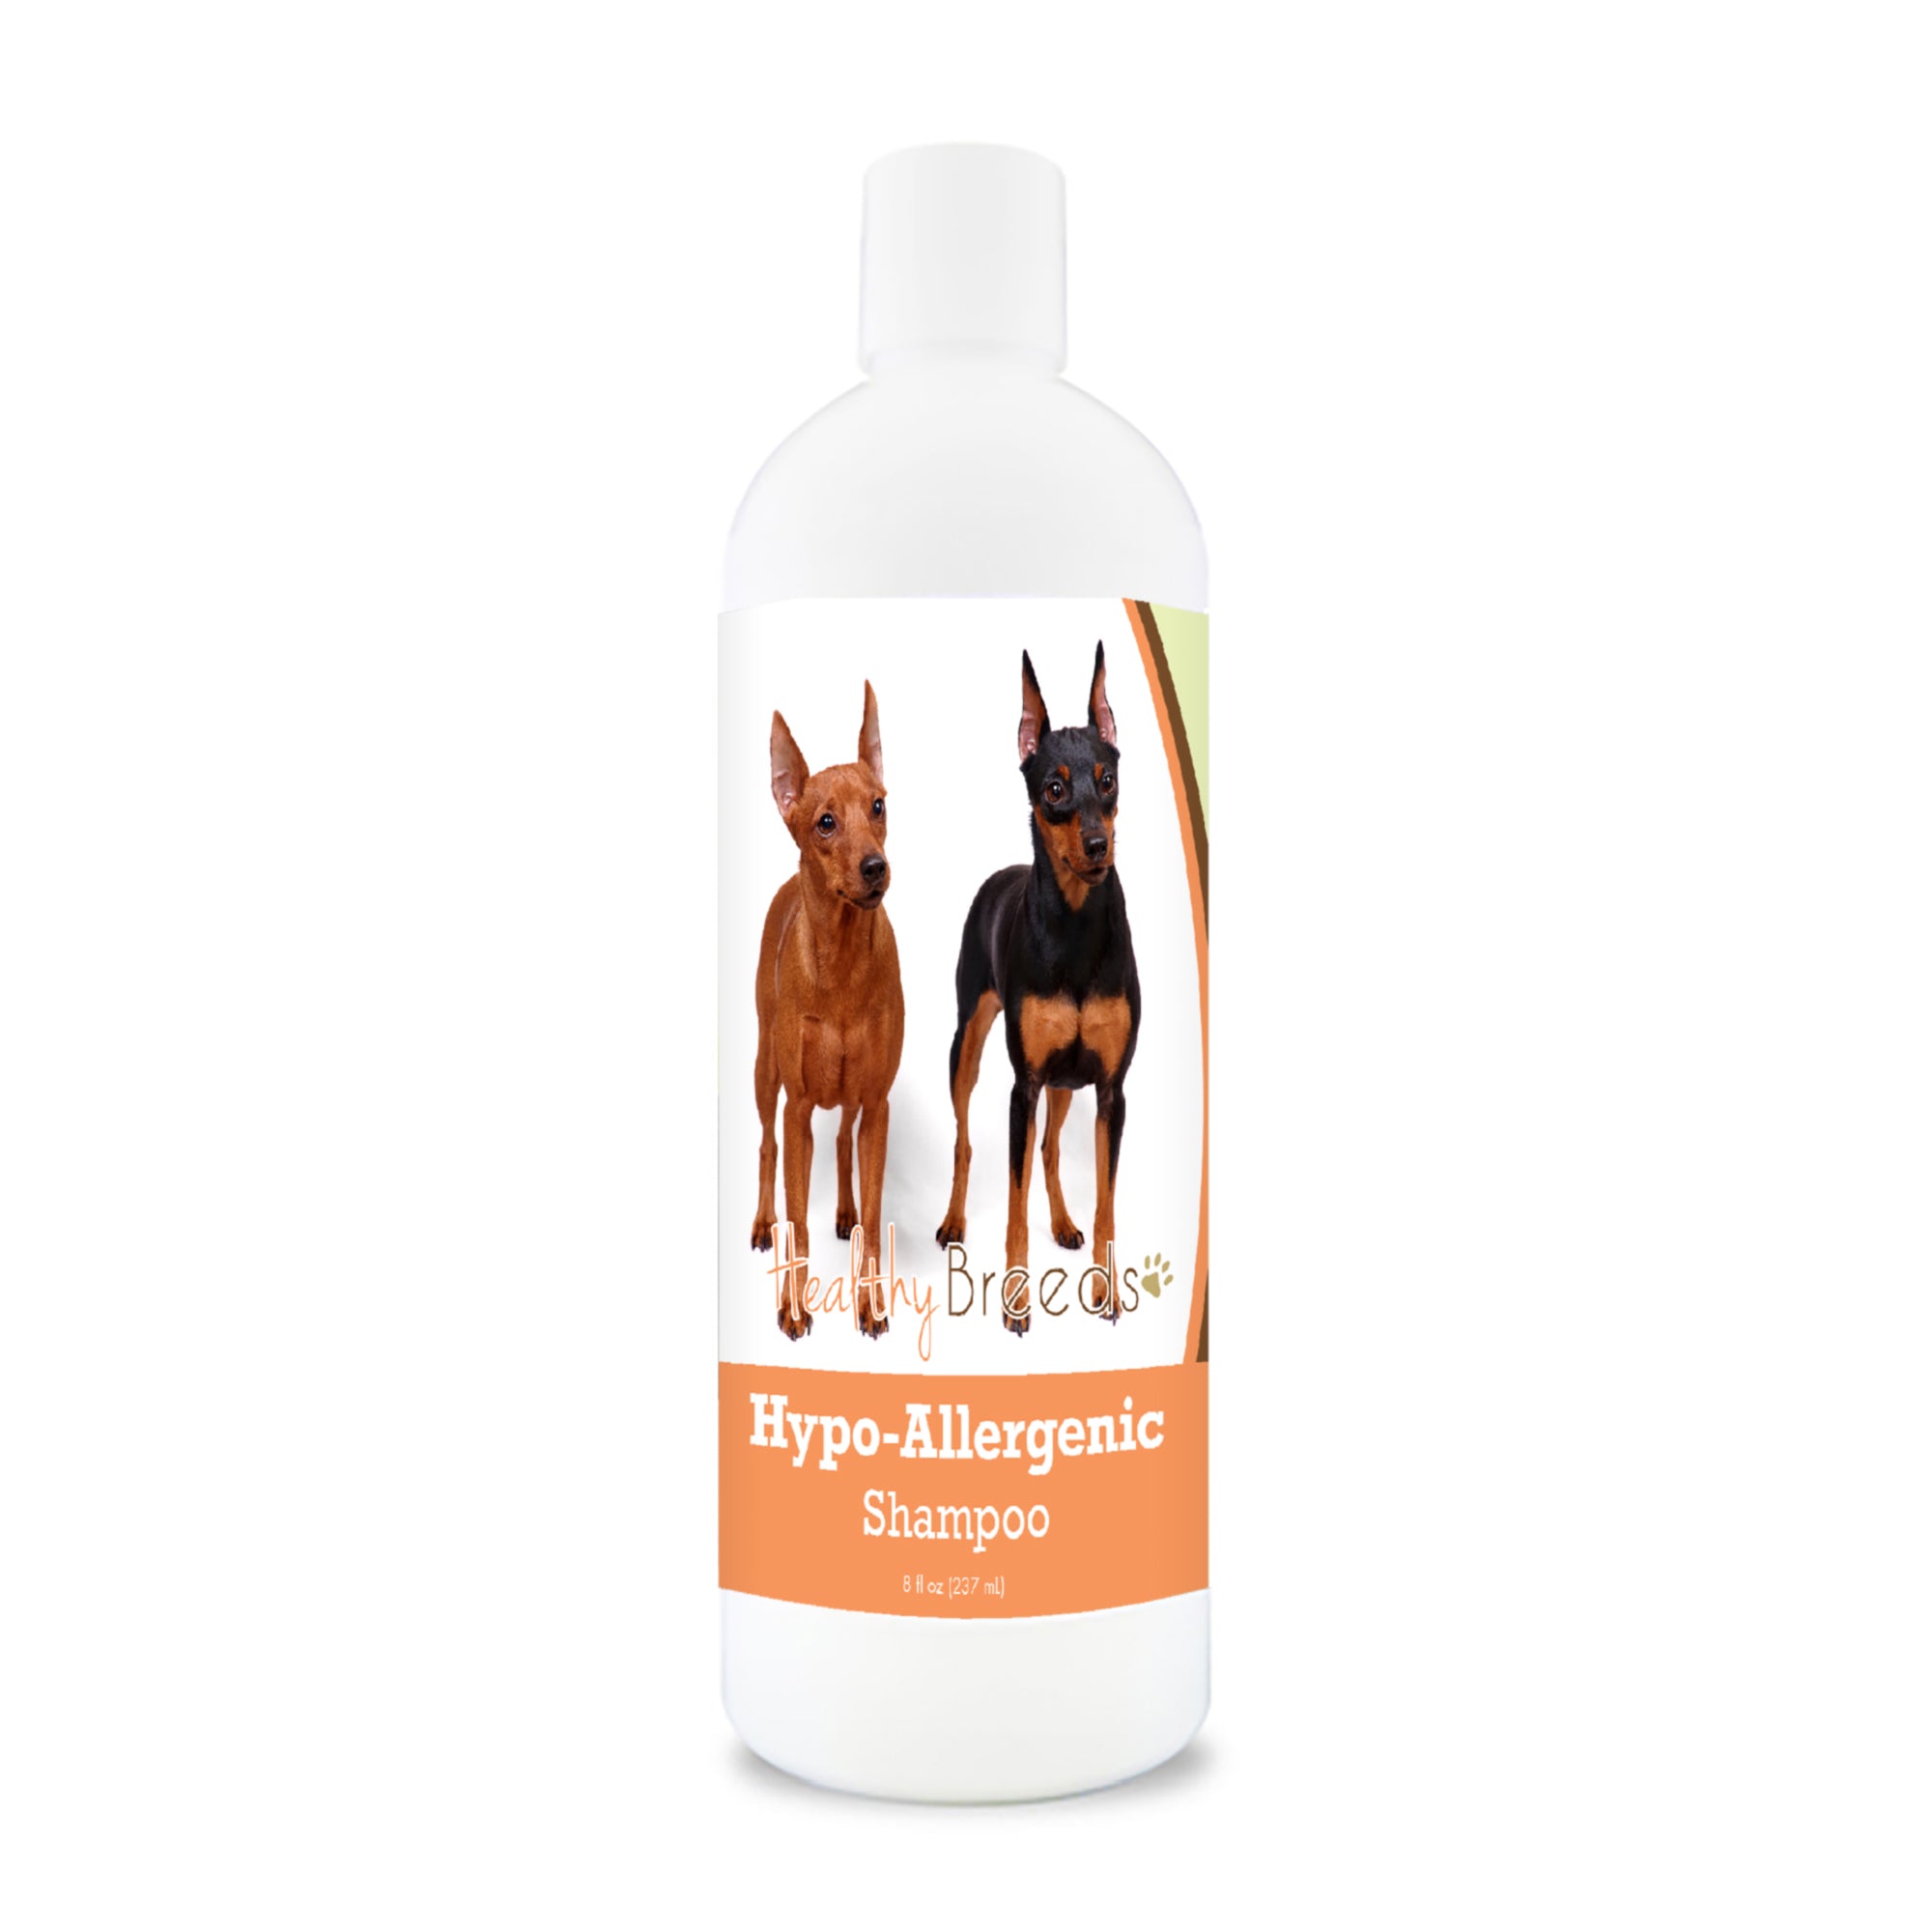 Miniature Pinscher Hypo-Allergenic Shampoo 8 oz